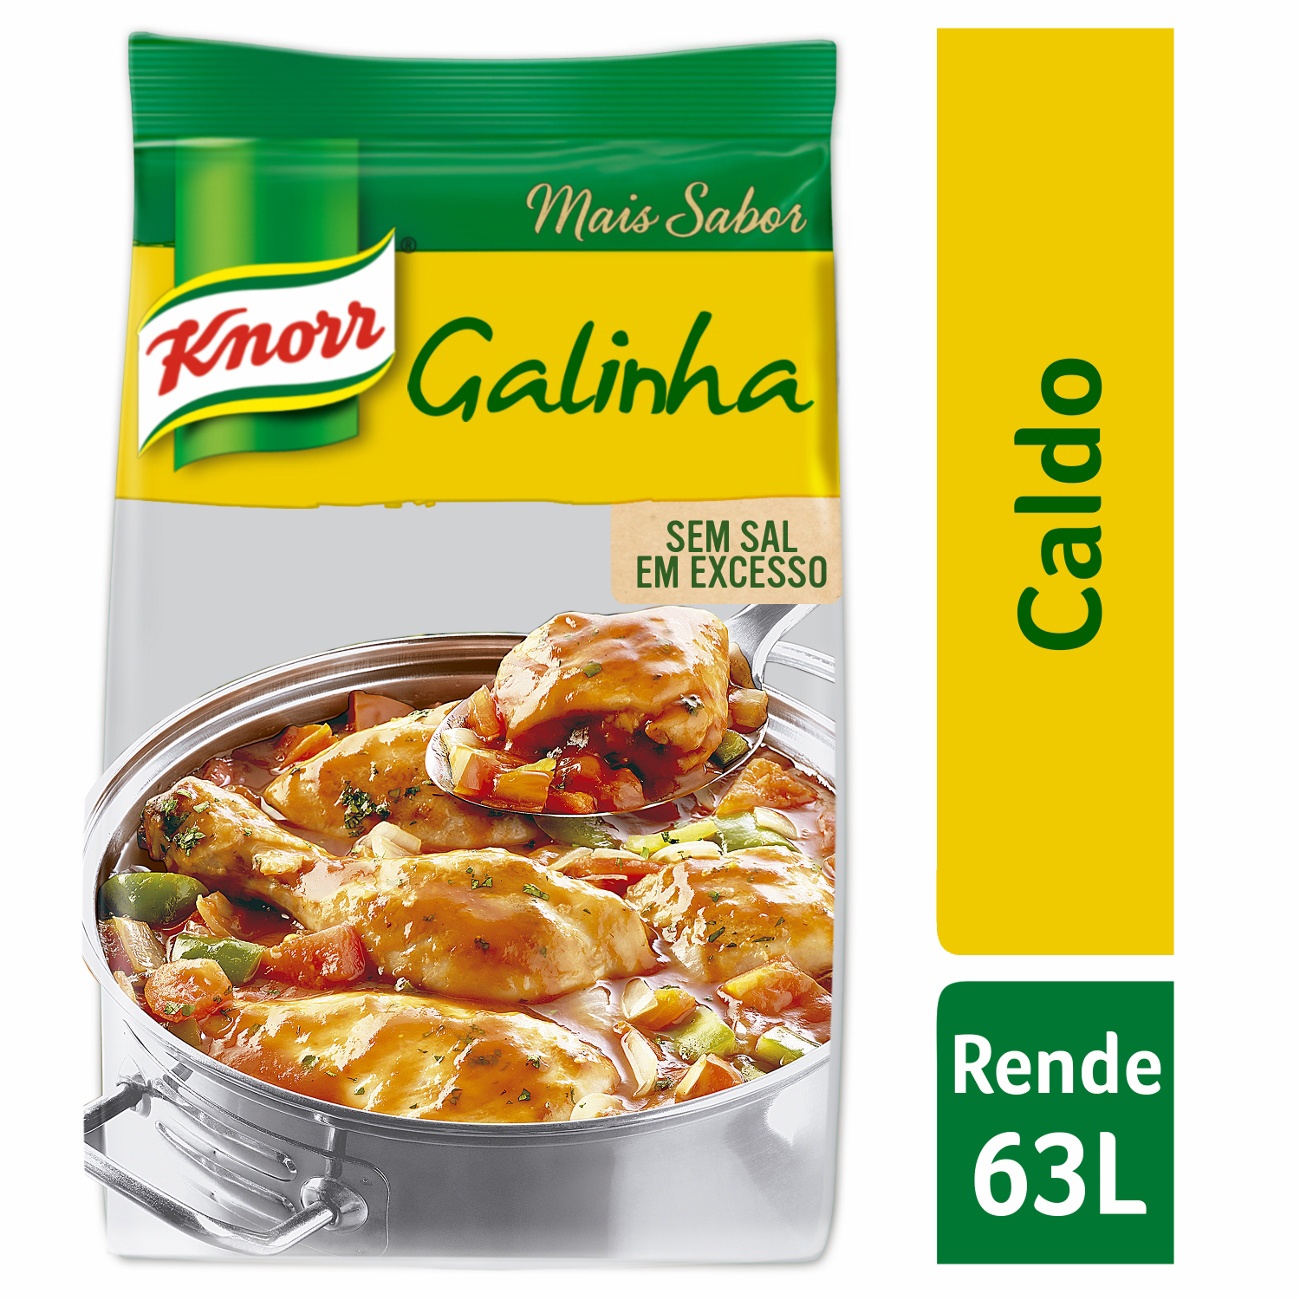 Caldo Knorr Galinha Bag 1,01kg